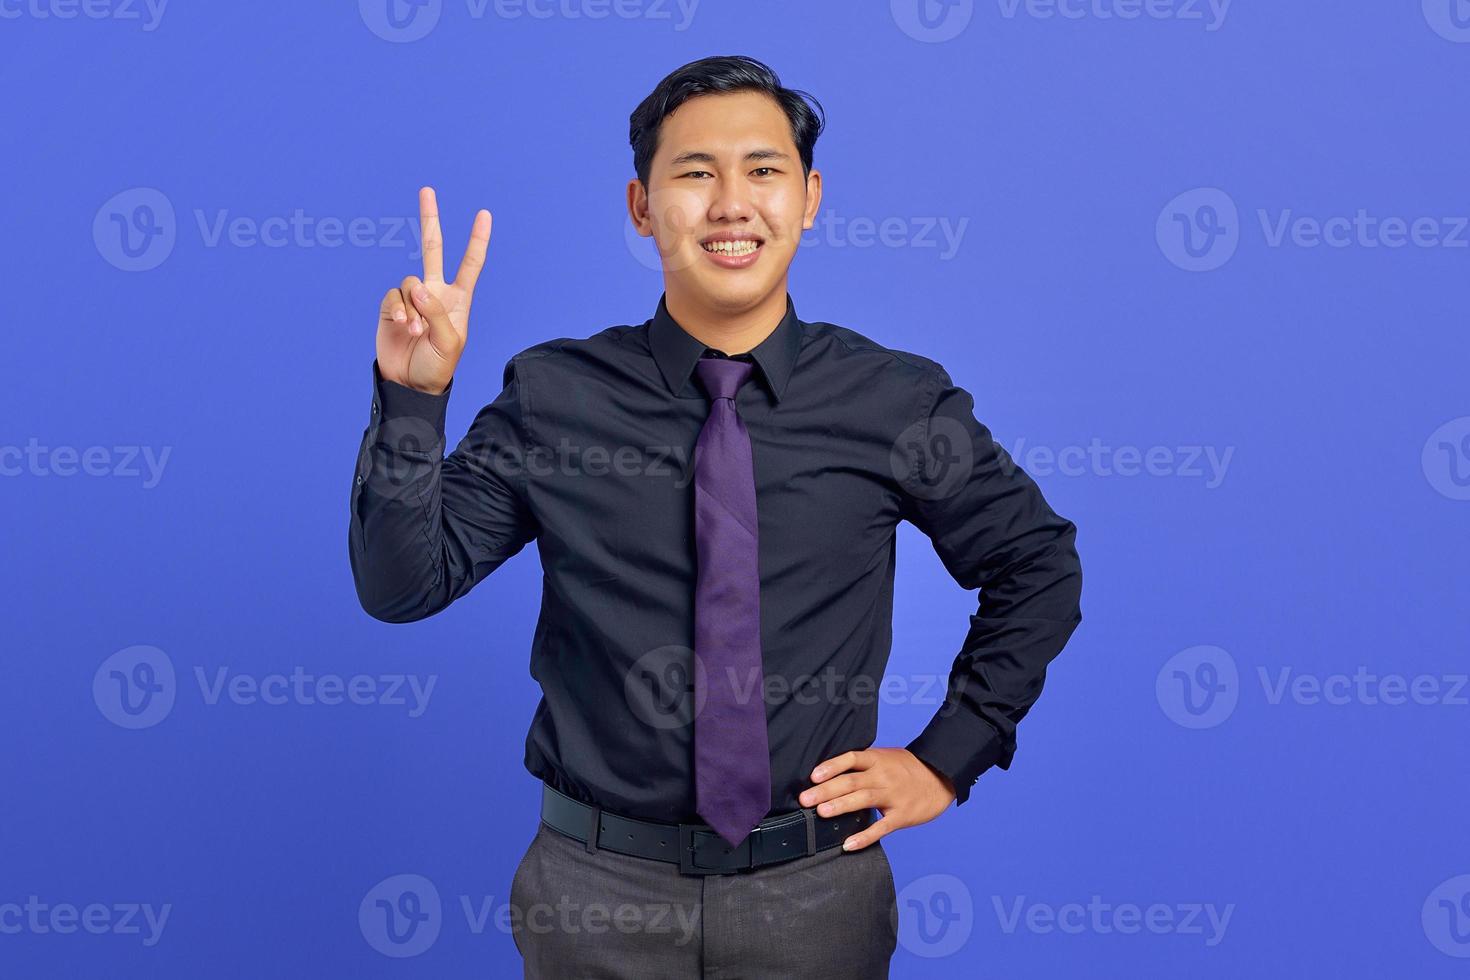 bonito alegre jovem asiático mostrando o símbolo da paz em fundo roxo foto